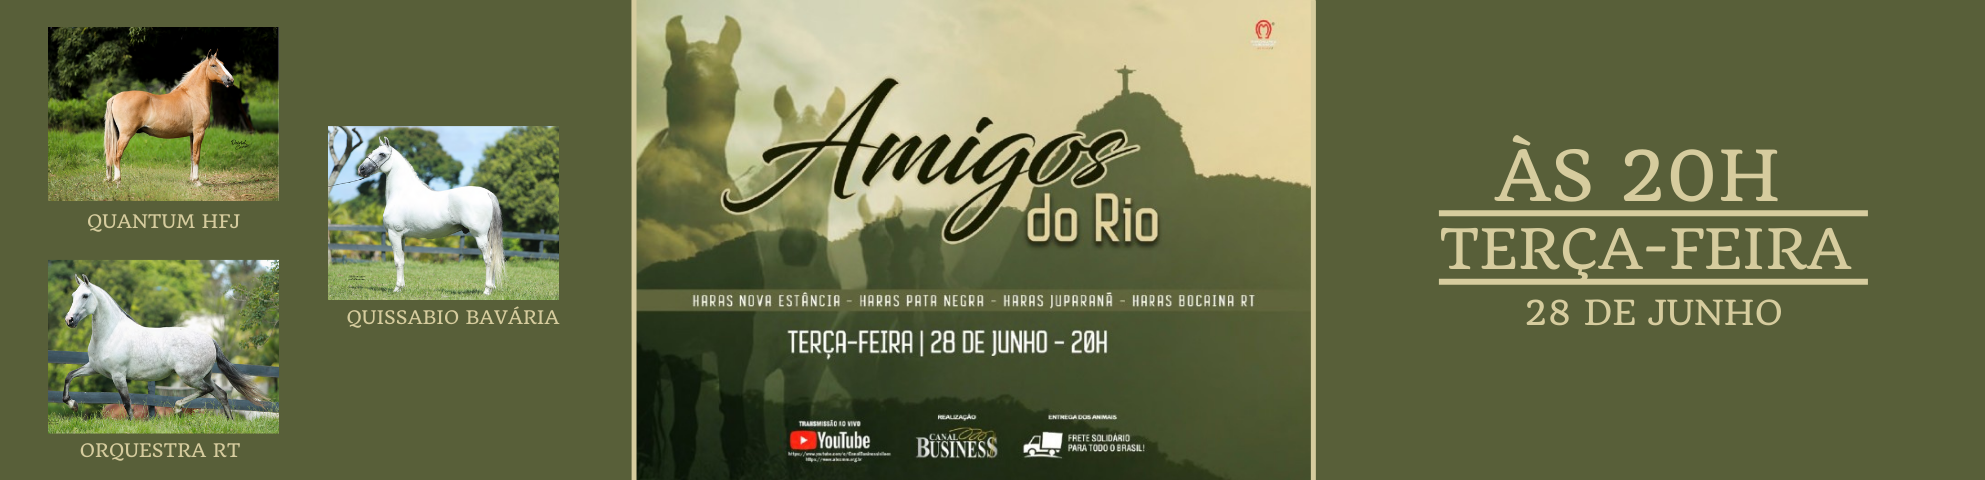 Slide AMIGOS DO RIO